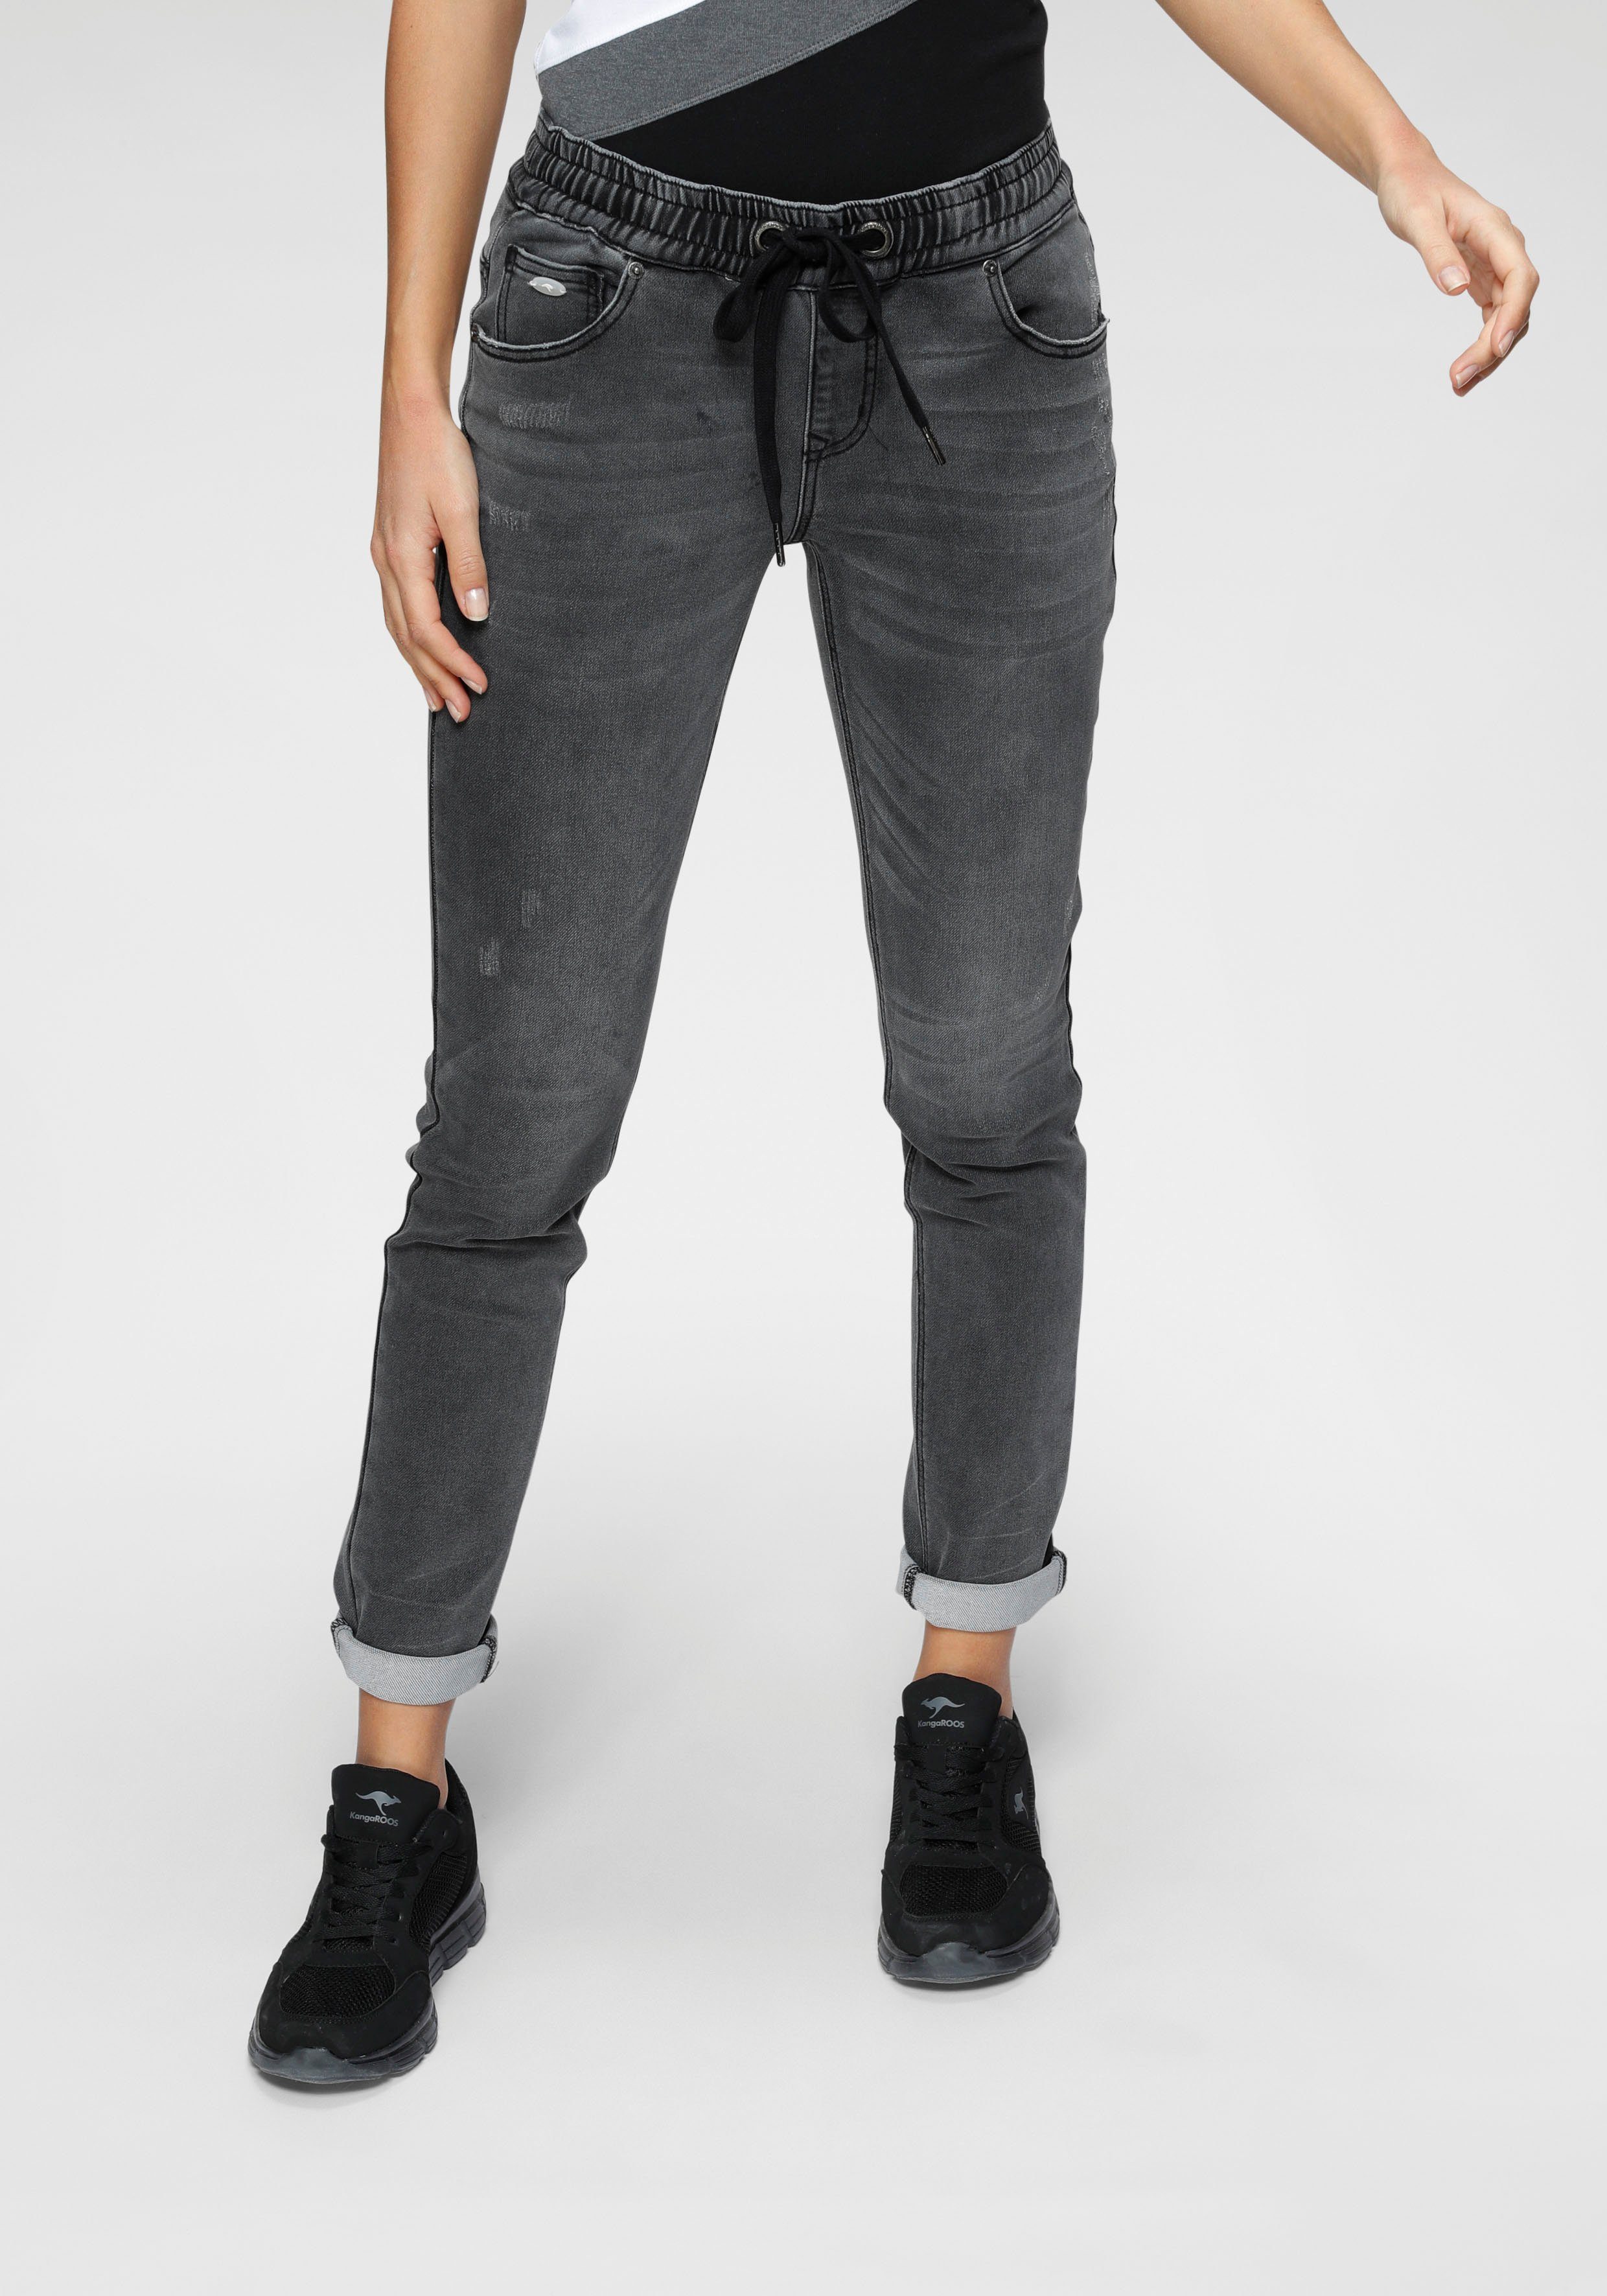 Graue Jeans für Damen online kaufen » Graue Jeanshosen | OTTO